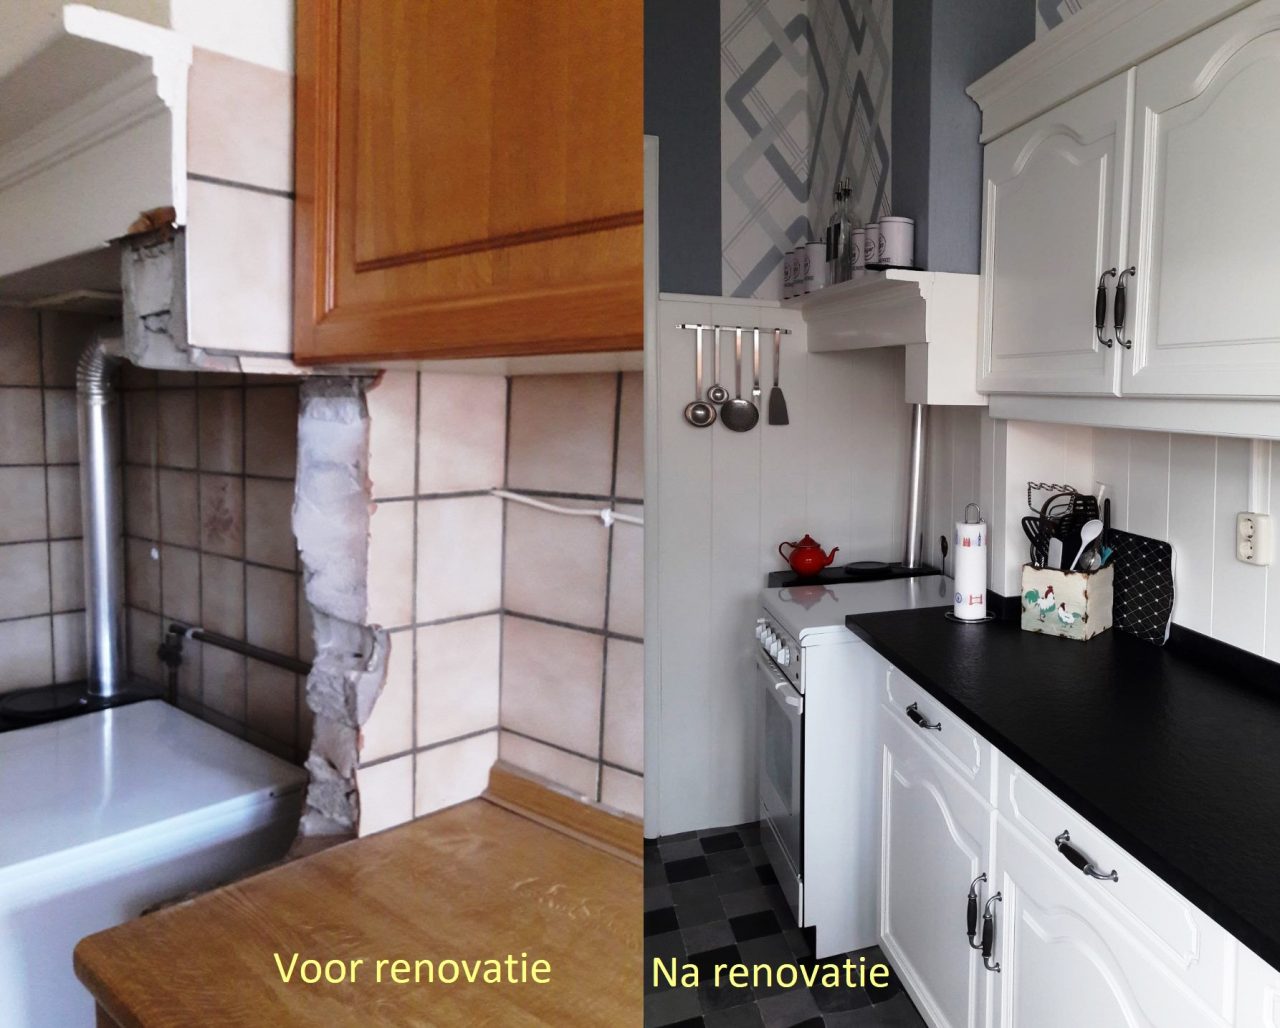 Keuken renovatie met een granieten werkblad, een nieuwe nostalgische kraan en een vlakinbouw rvs spoelbak.